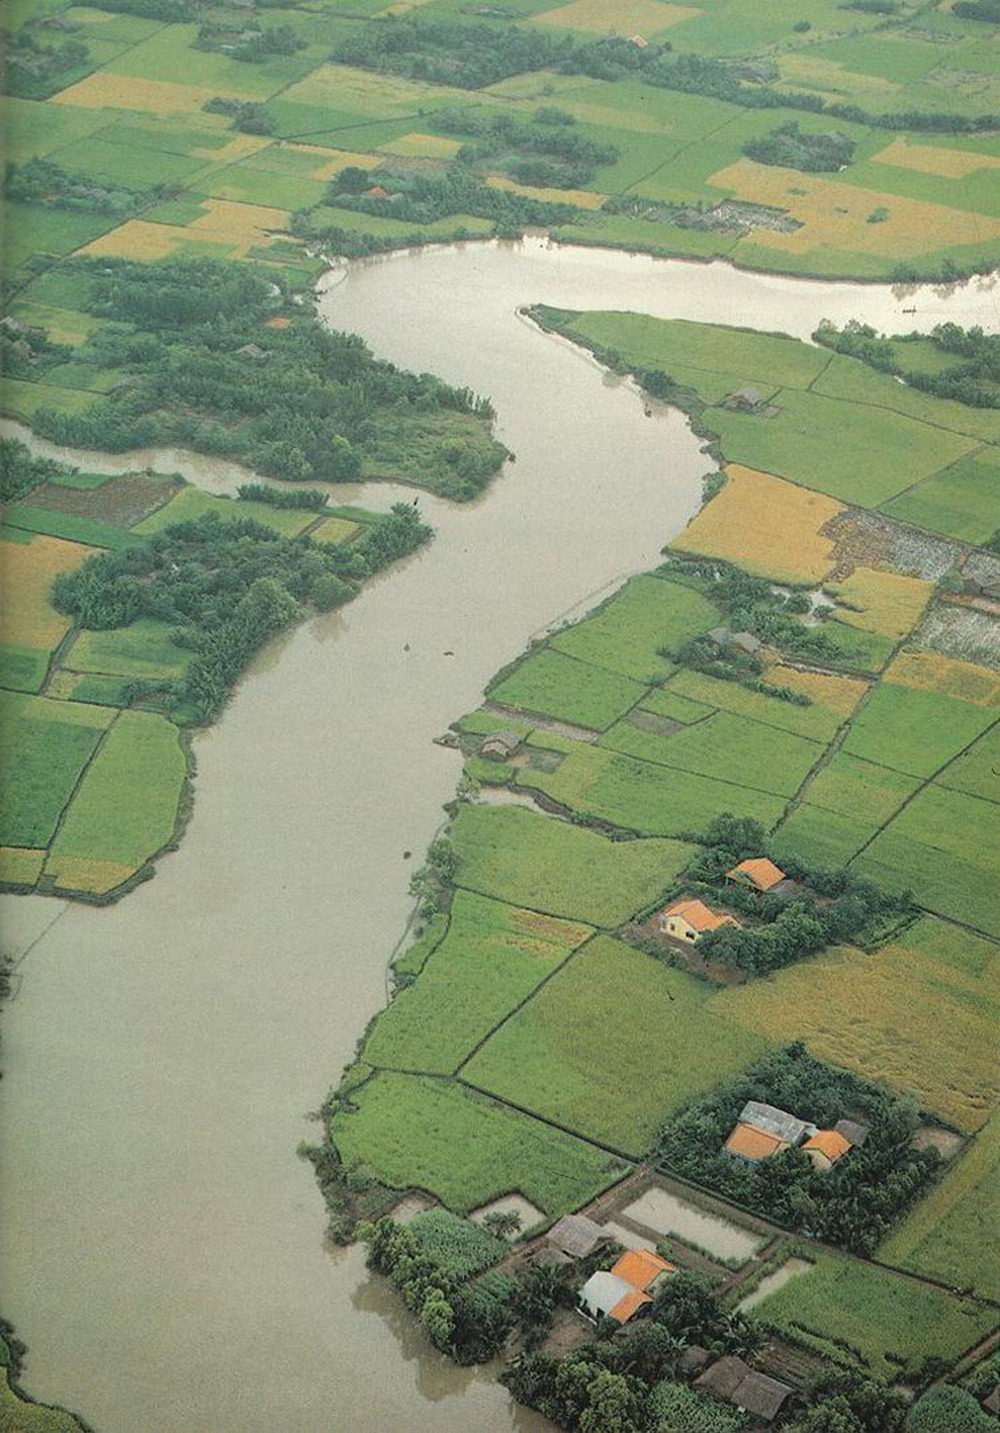 Chỉ tốn 2,5 giờ chạy xe đưa gia đình tới Lạng Sơn, nơi có dòng sông chảy ngược và vườn hồng đang vào vụ - Ảnh 1.